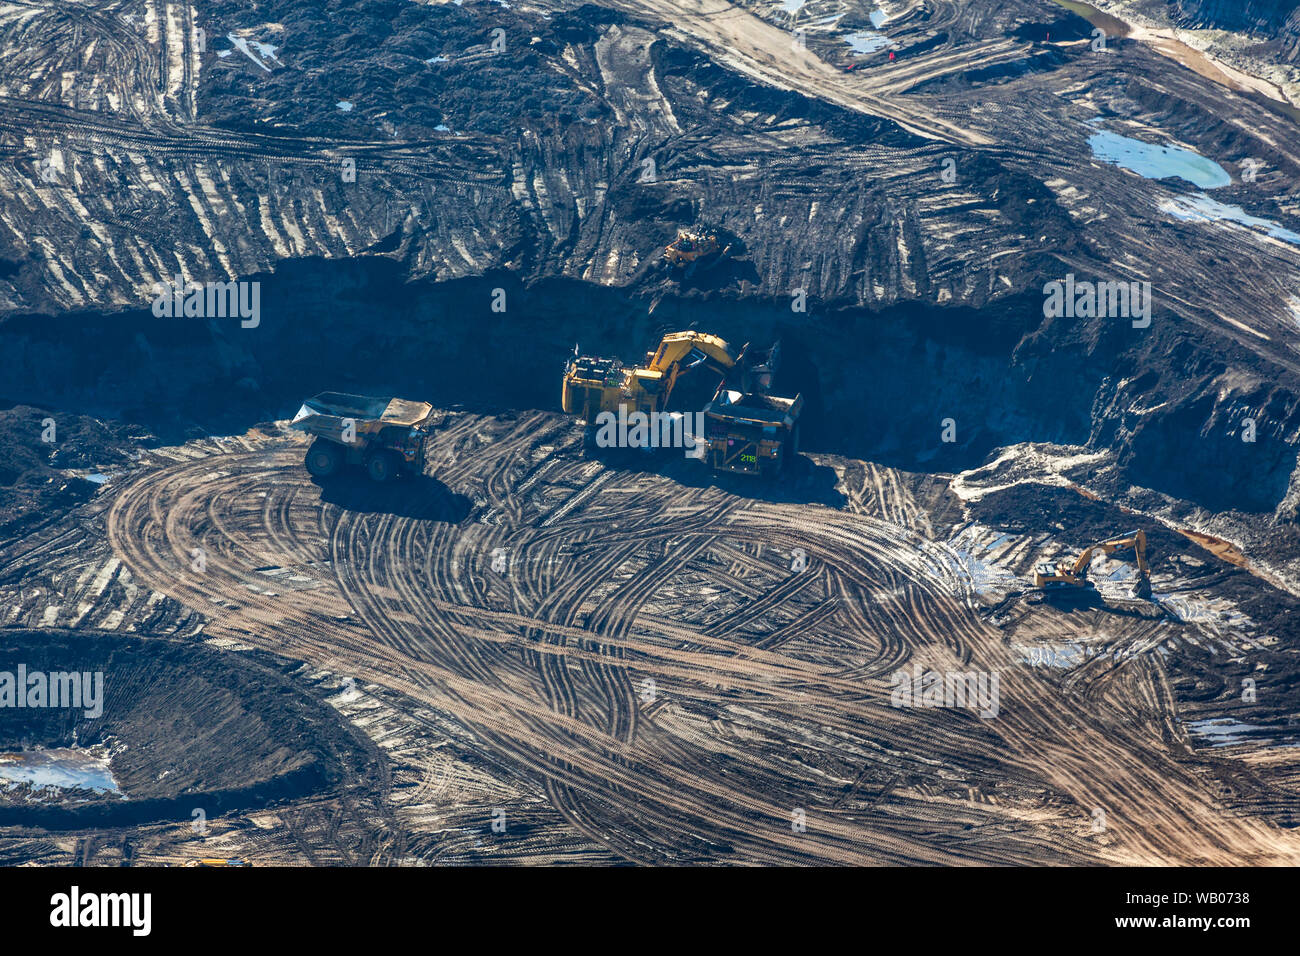 Sabbie dell'olio le operazioni di data mining al progetto Kearl a nord di Fort McMurray, Alberta, Canada. Foto Stock